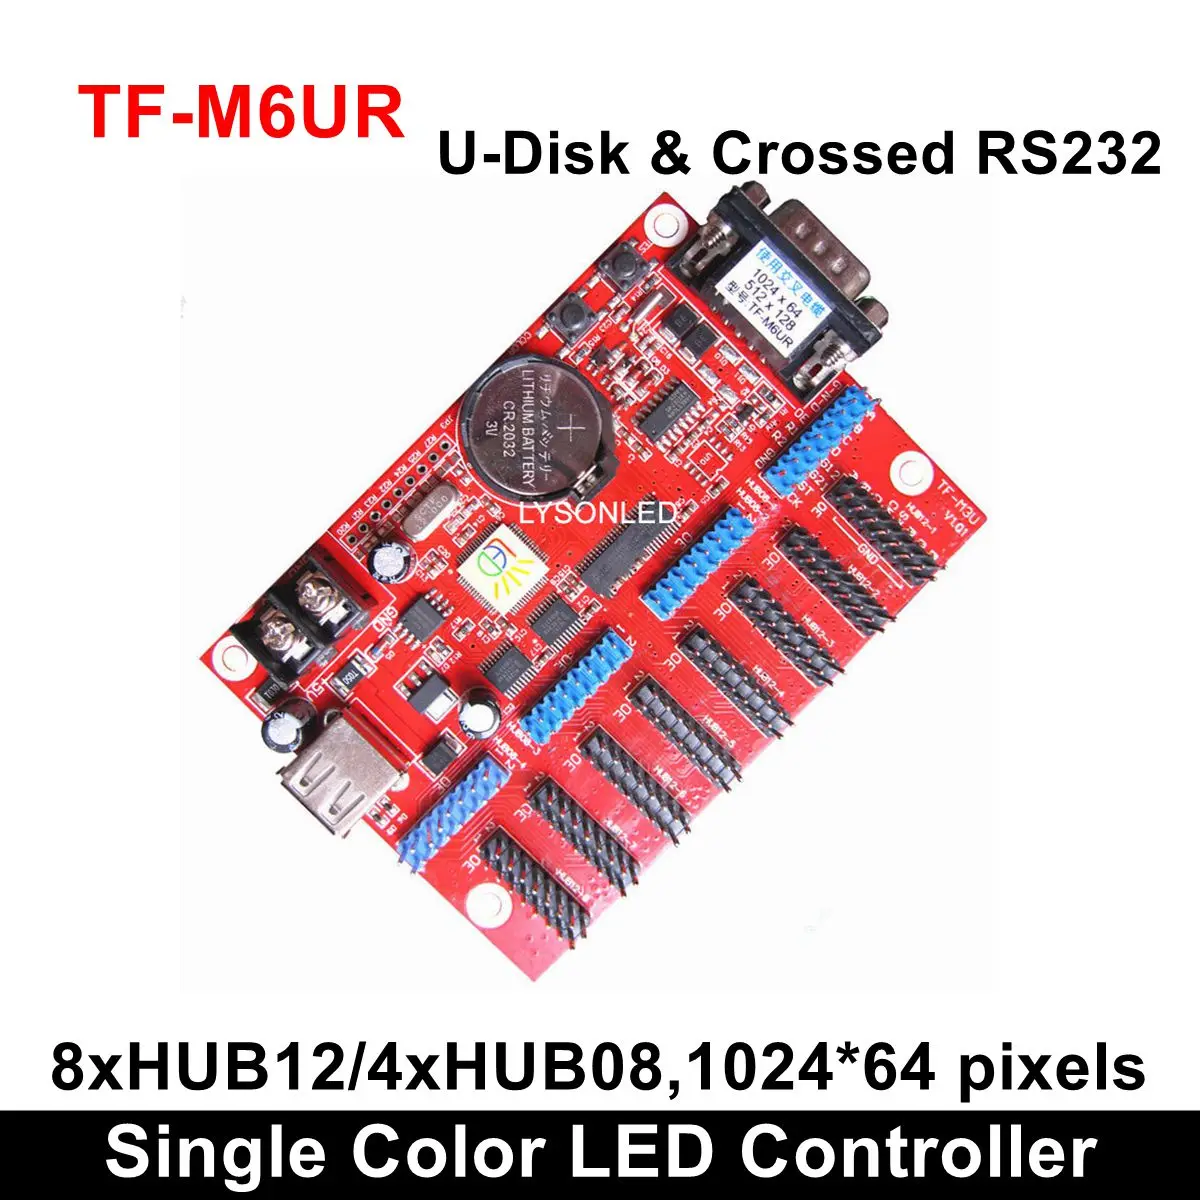 TF-MU TF-C6UR TF-M6UR большой USB-драйвер Порты и разъёмы один Цвет светодиодный контроль карты P4.75/P7.62/P10 монохромный/двойной модуль светодиодной